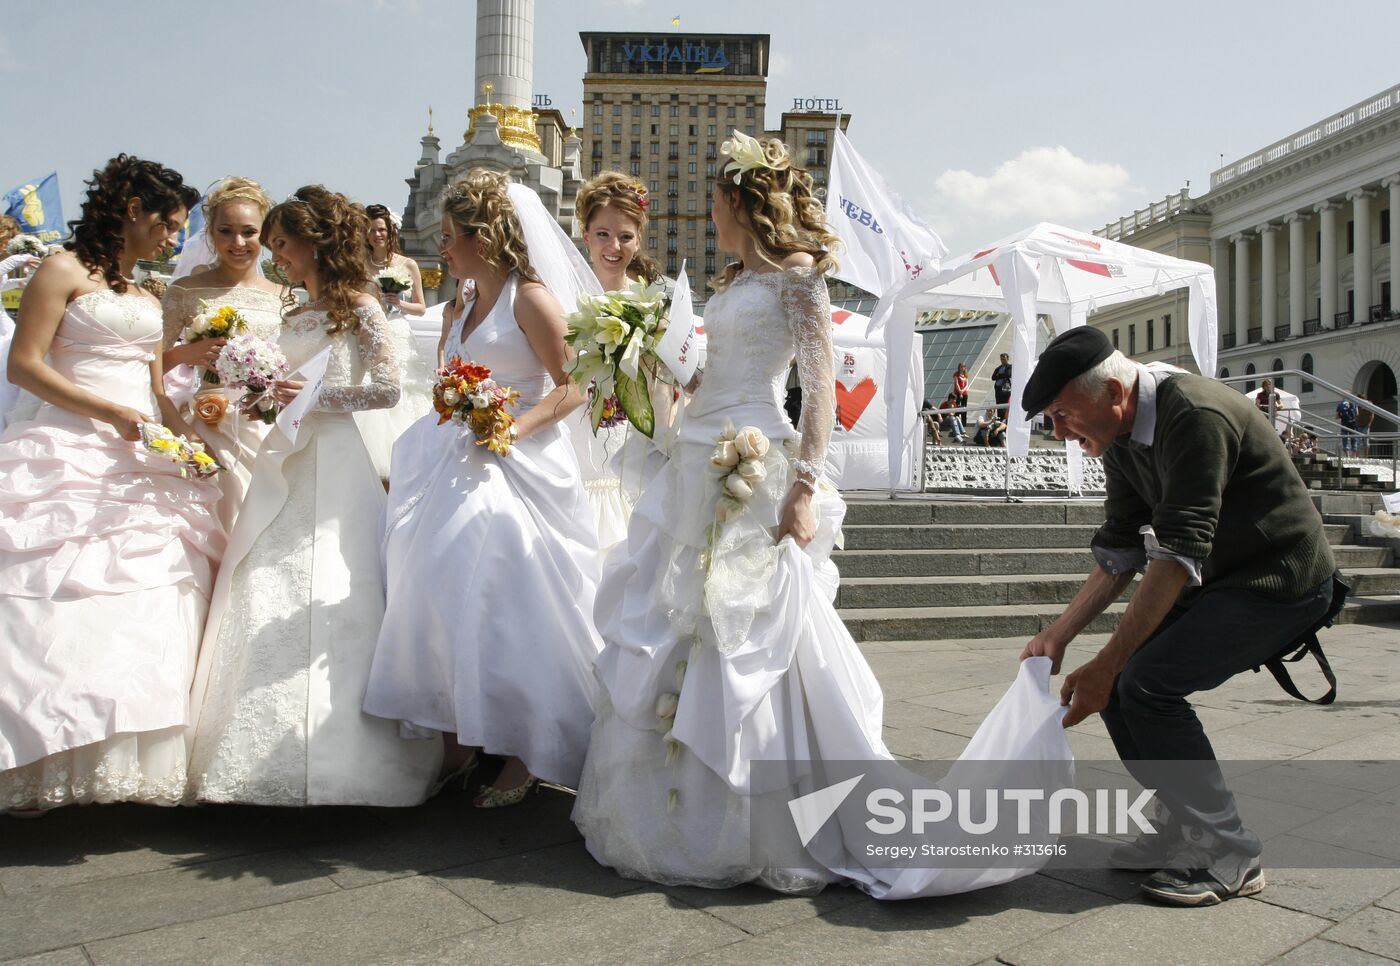 A bride parade